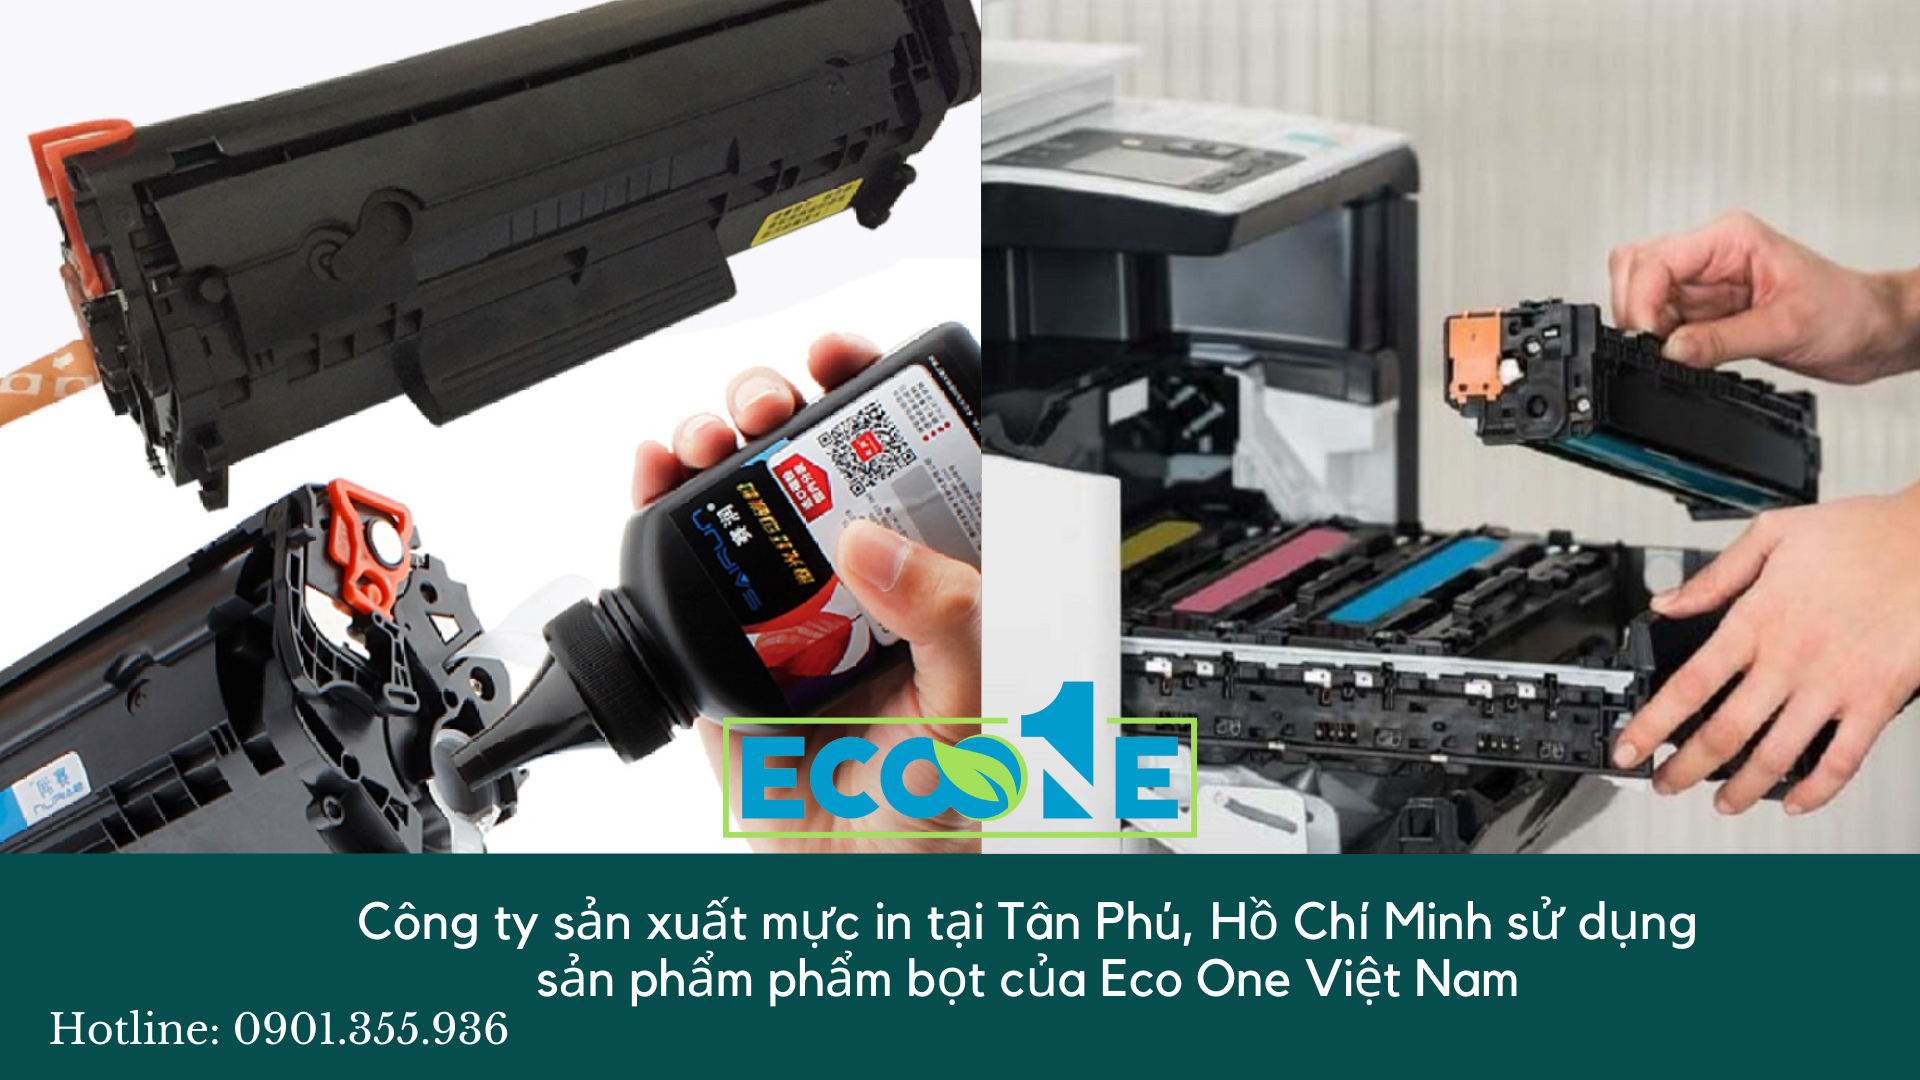 Công ty sản xuất mực in tại Tân Phú, Hồ Chí Minh sử dụng sản phẩm phẩm bọt của Eco One Việt nam